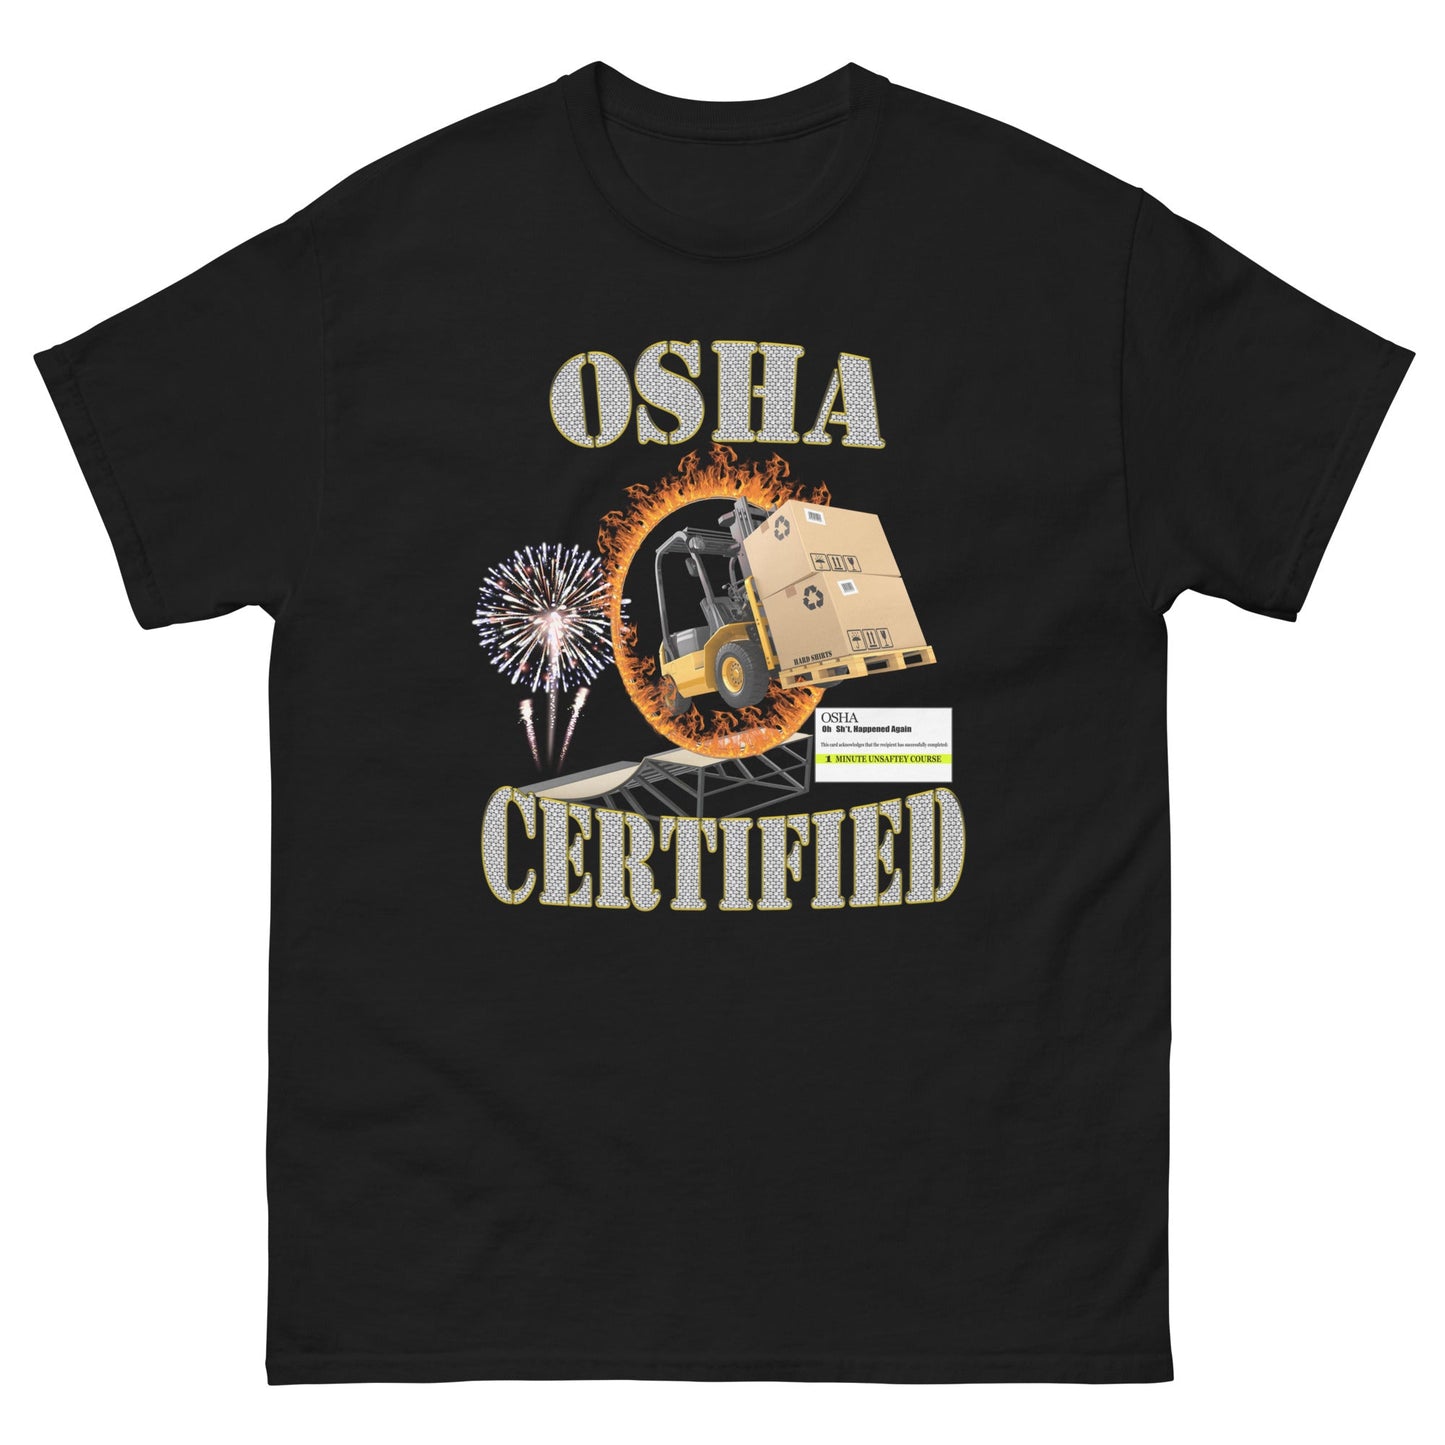 OSHA CERTIFIED - HardShirts